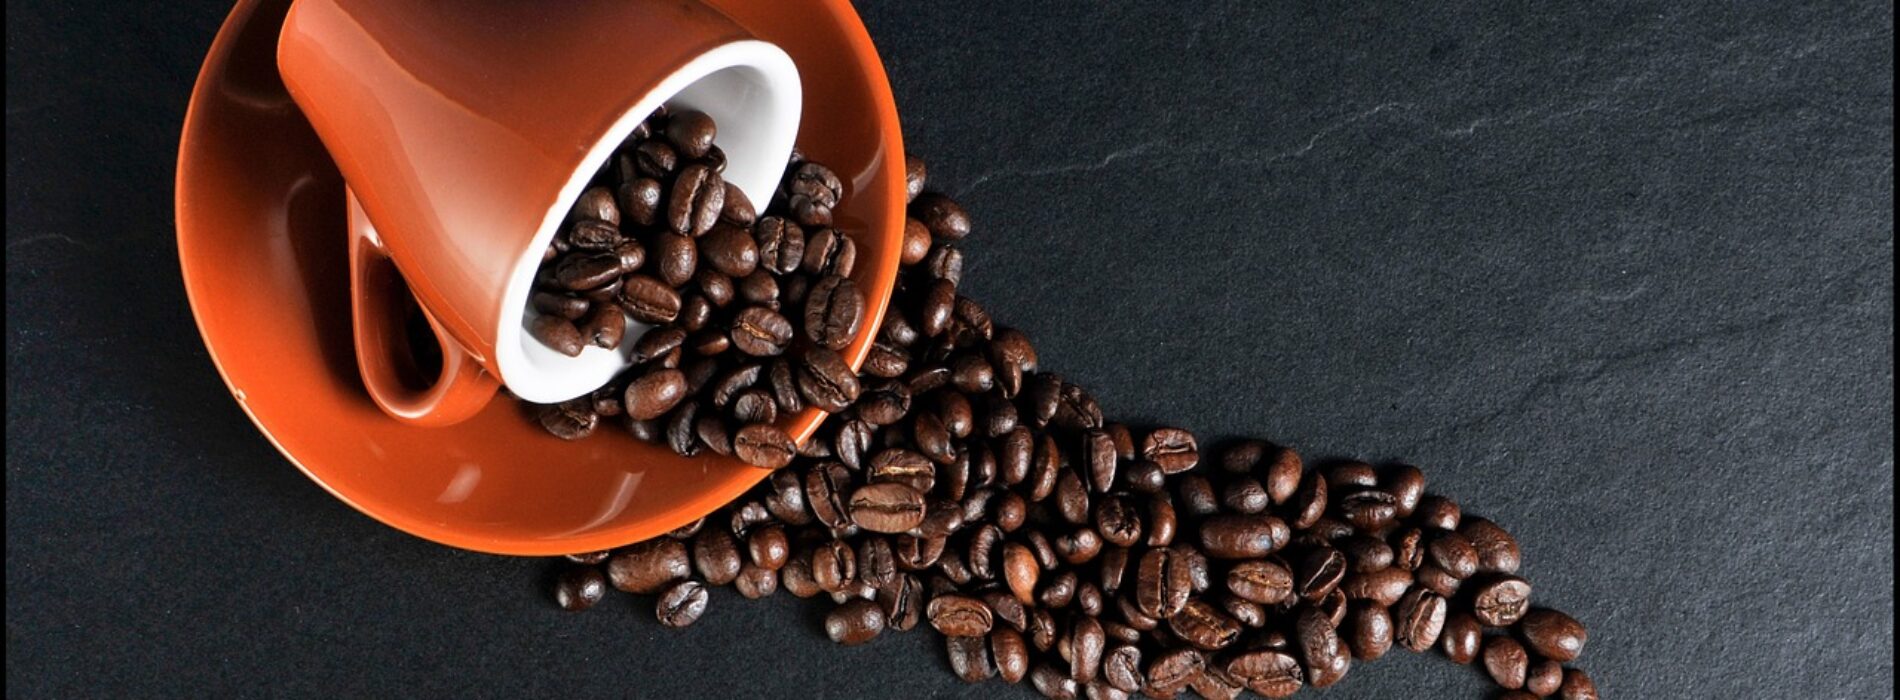 U połowy ludzi nadmierne spożycie kawy może prowadzić do problemów z nerkami. Winny jest wariant genu odpowiedzialnego za metabolizm kofeiny